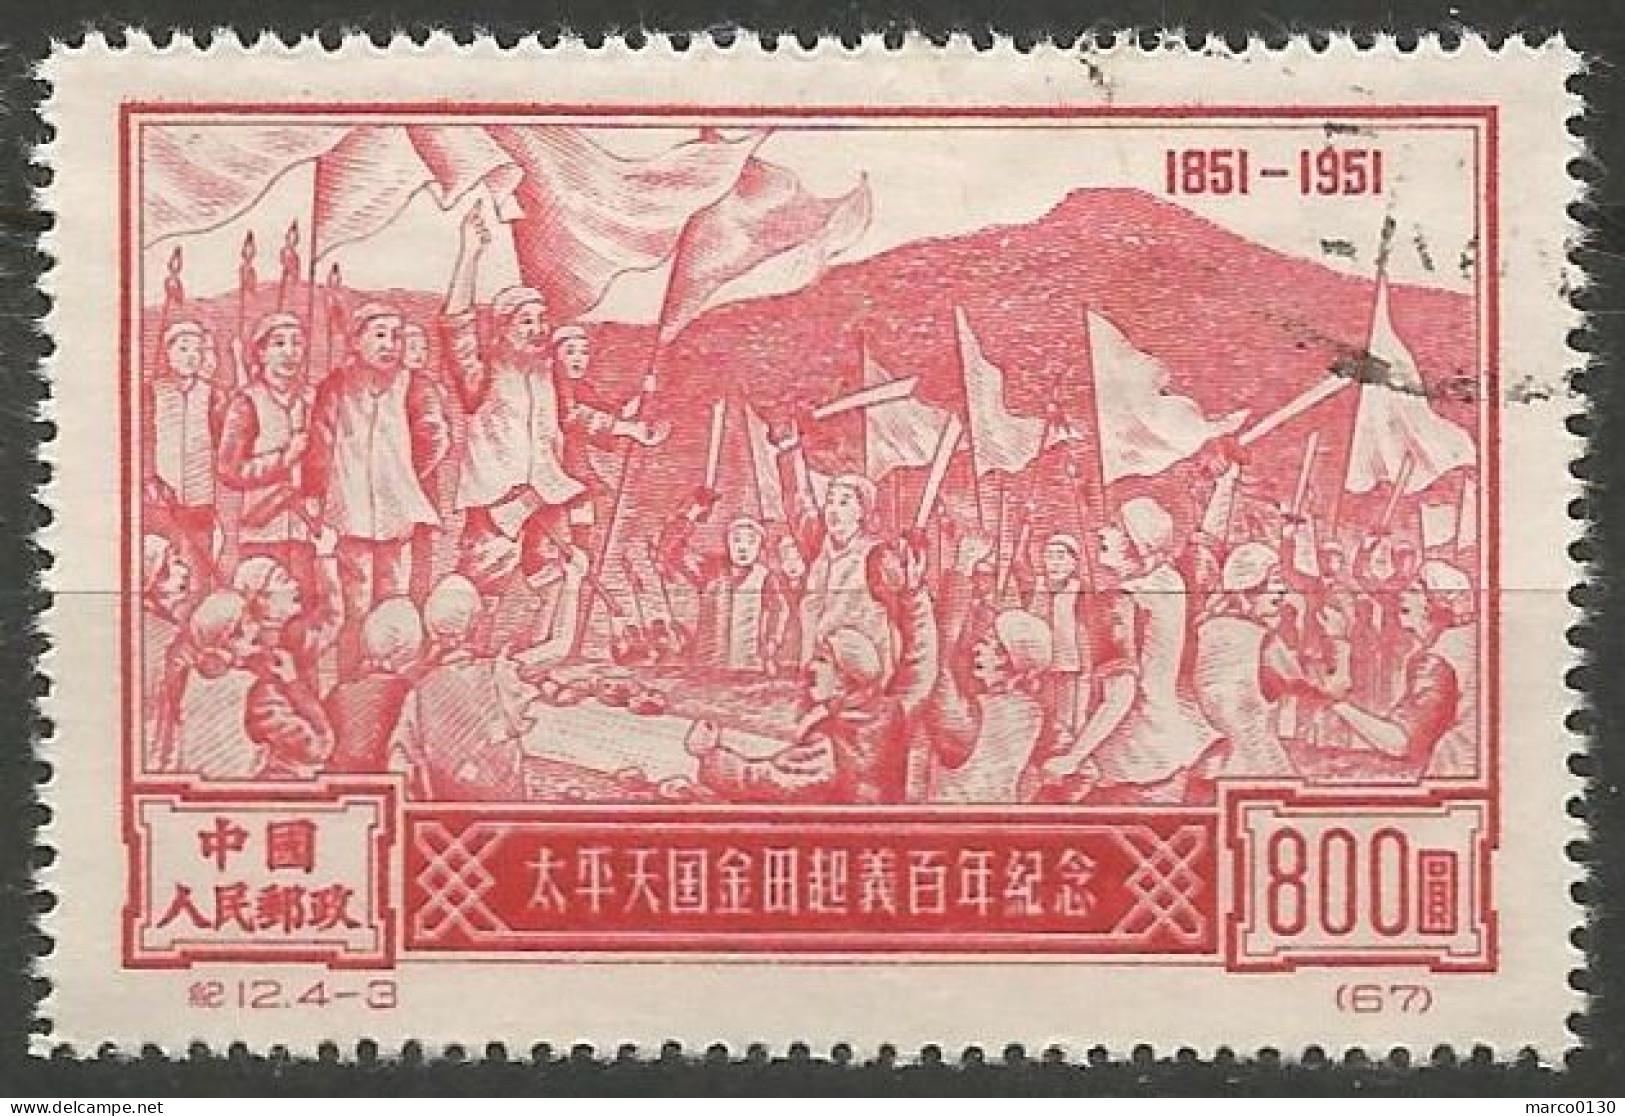 CHINE N° 920 + N° 921 + N° 922 + N° 923  OBLITERE - Used Stamps